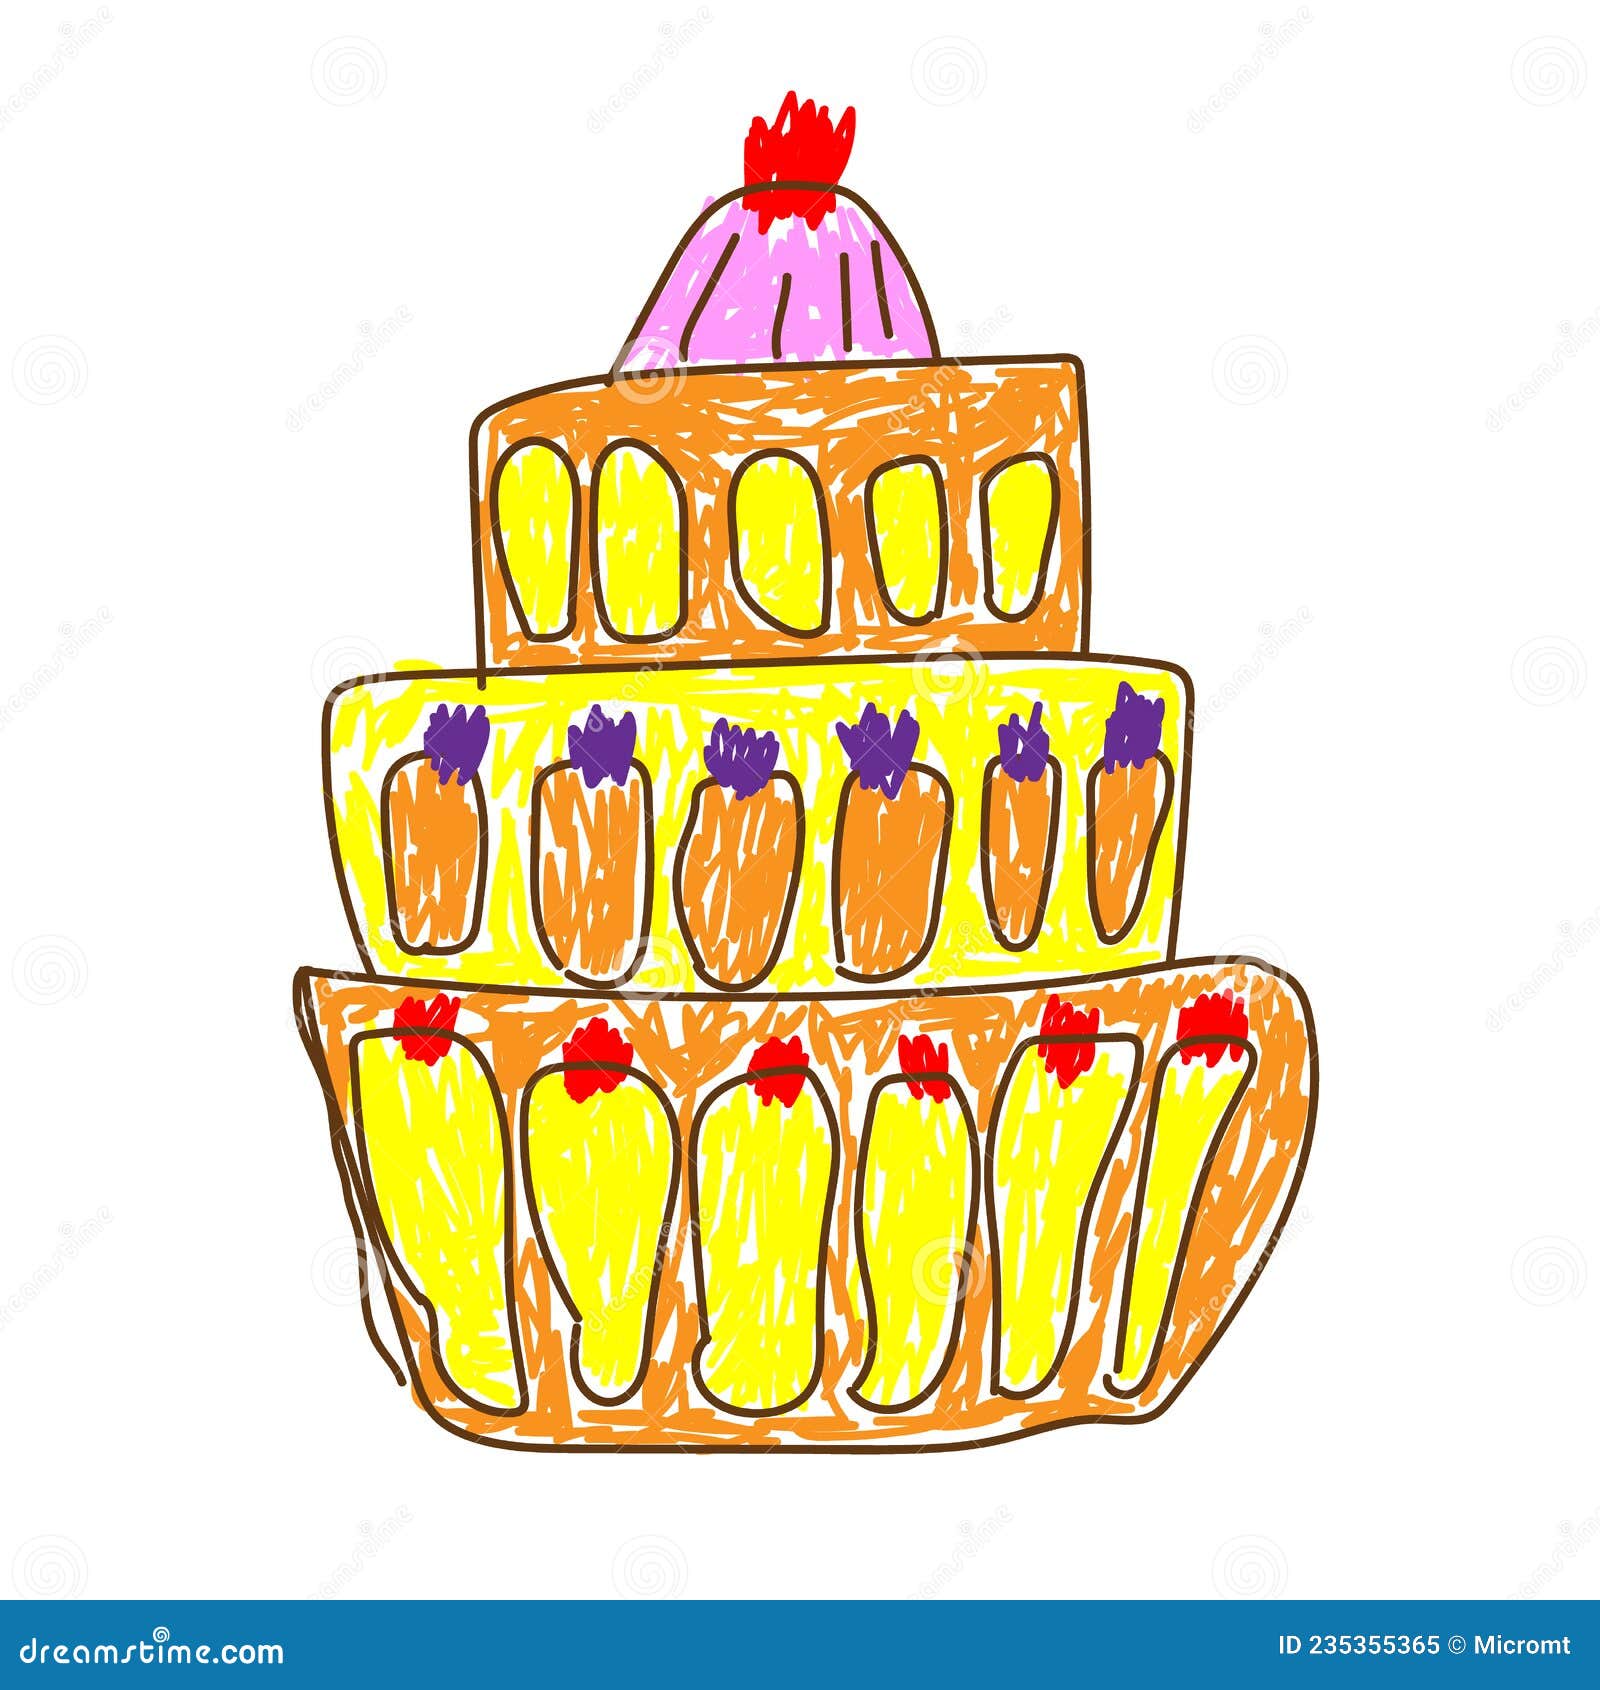 ilustração em vetor de bolo de aniversário em estilo infantil